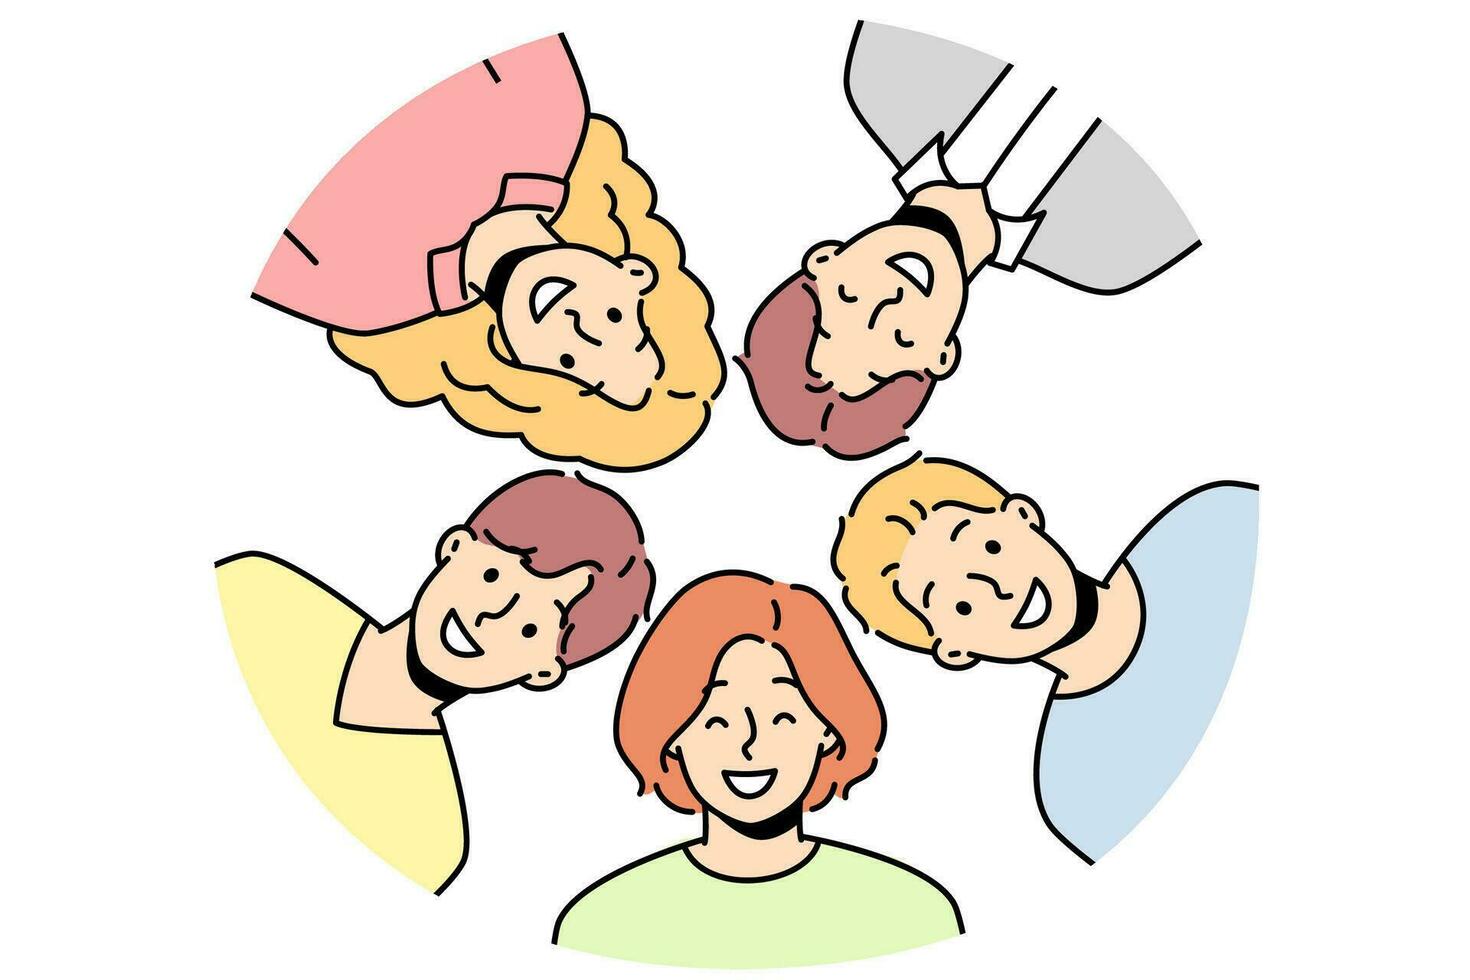 portrait d'amis divers souriants posant ensemble en cercle. photo de groupe de personnes multiraciales heureuses montrant l'unité et l'amitié. illustration vectorielle. vecteur